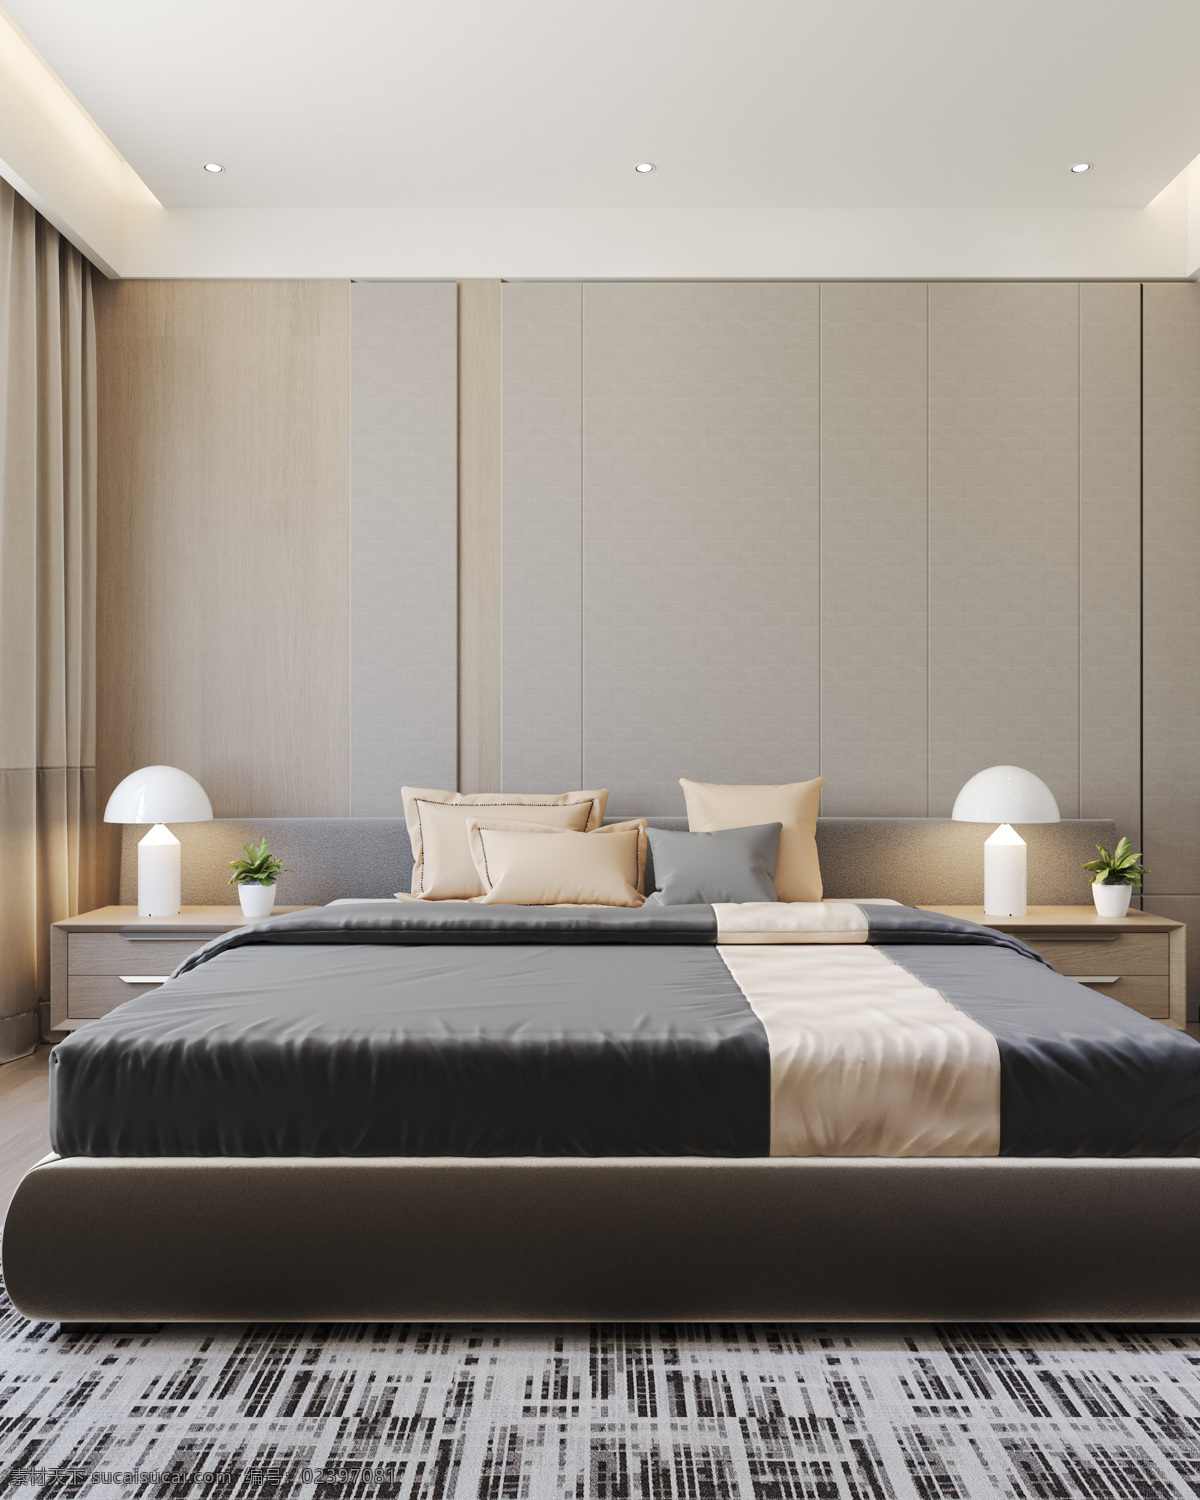 概念 系列 床头 背景 卧室 现代卧室 北欧卧室 卧室效果图 主卧 床头背景 环境设计 效果图